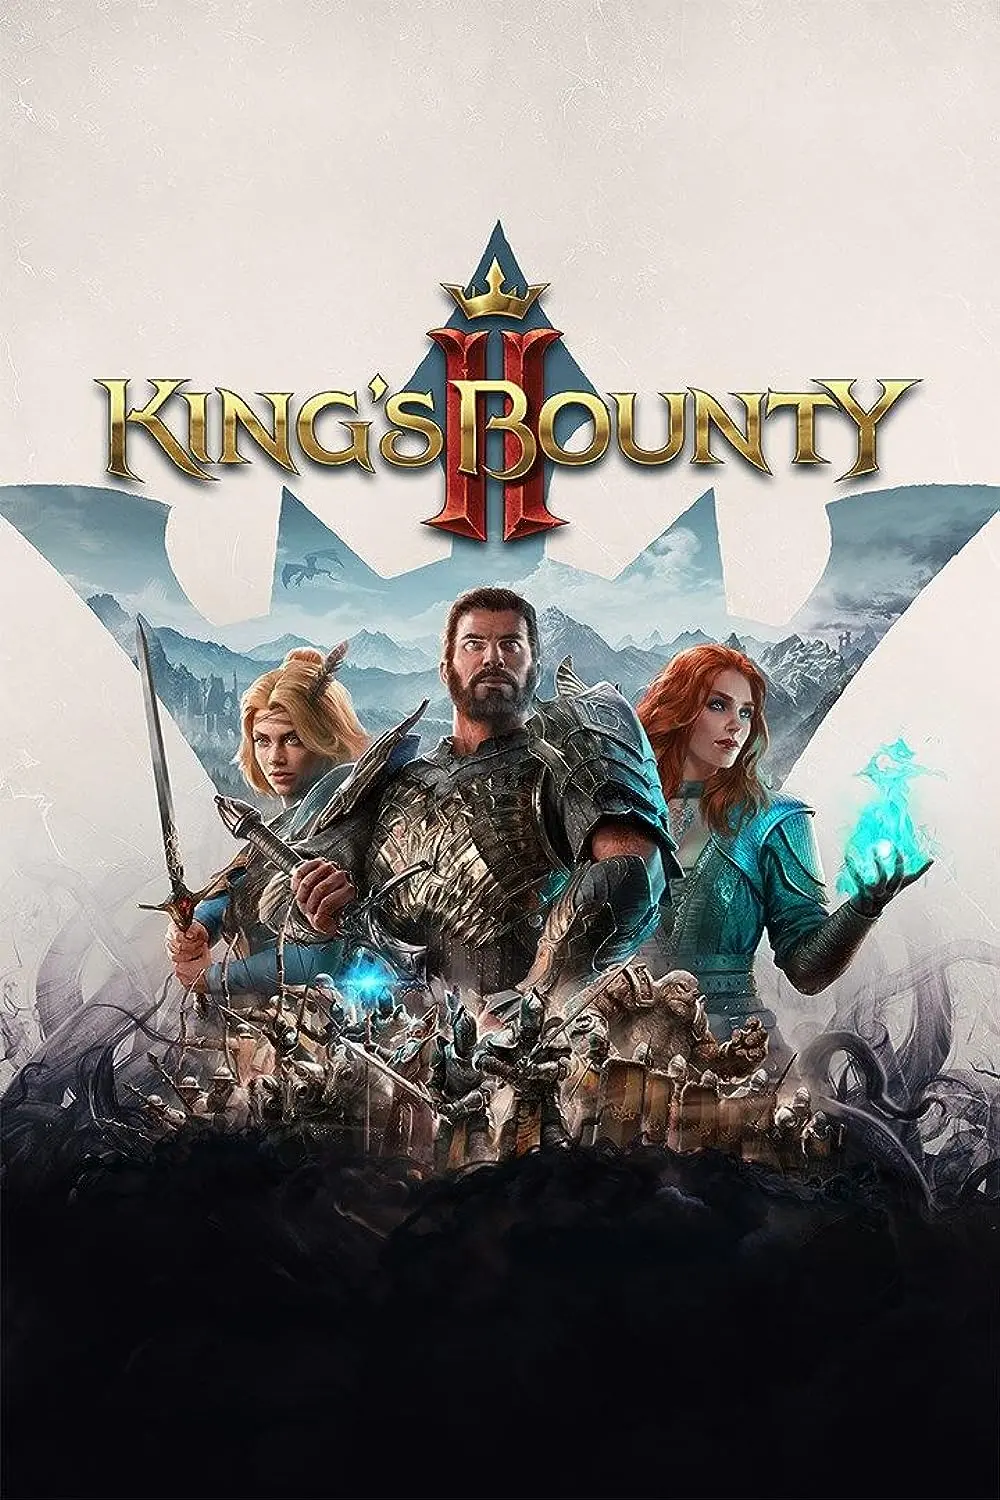 King's Bounty II (AR) (Xbox One / Xbox Series X|S) - Xbox Live - Digital Code